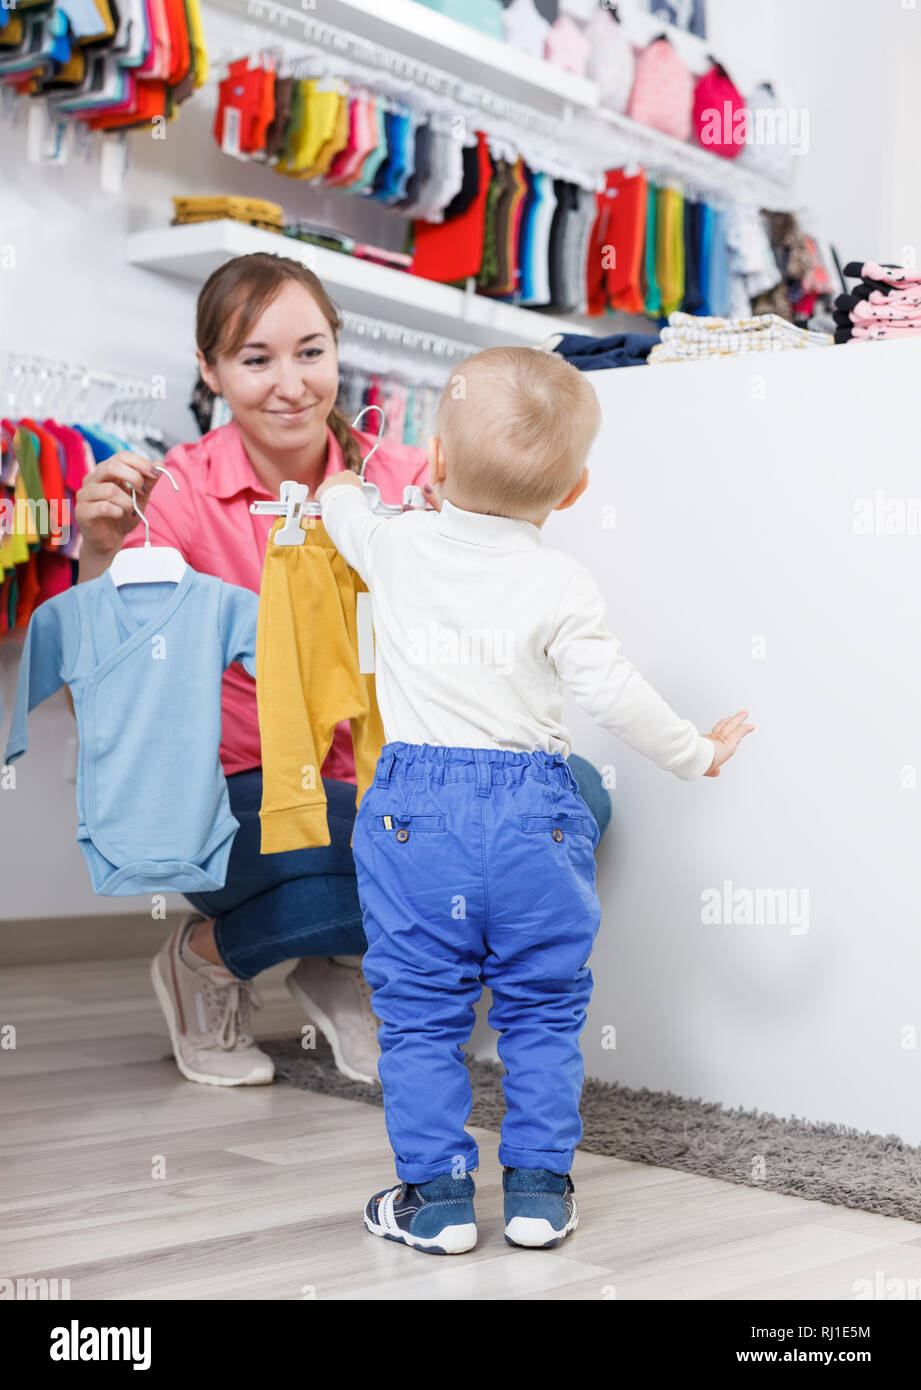 Lächelnd Mama mit Kind sucht moderne Kleidung für den kleinen Sohn im Store  Stockfotografie - Alamy